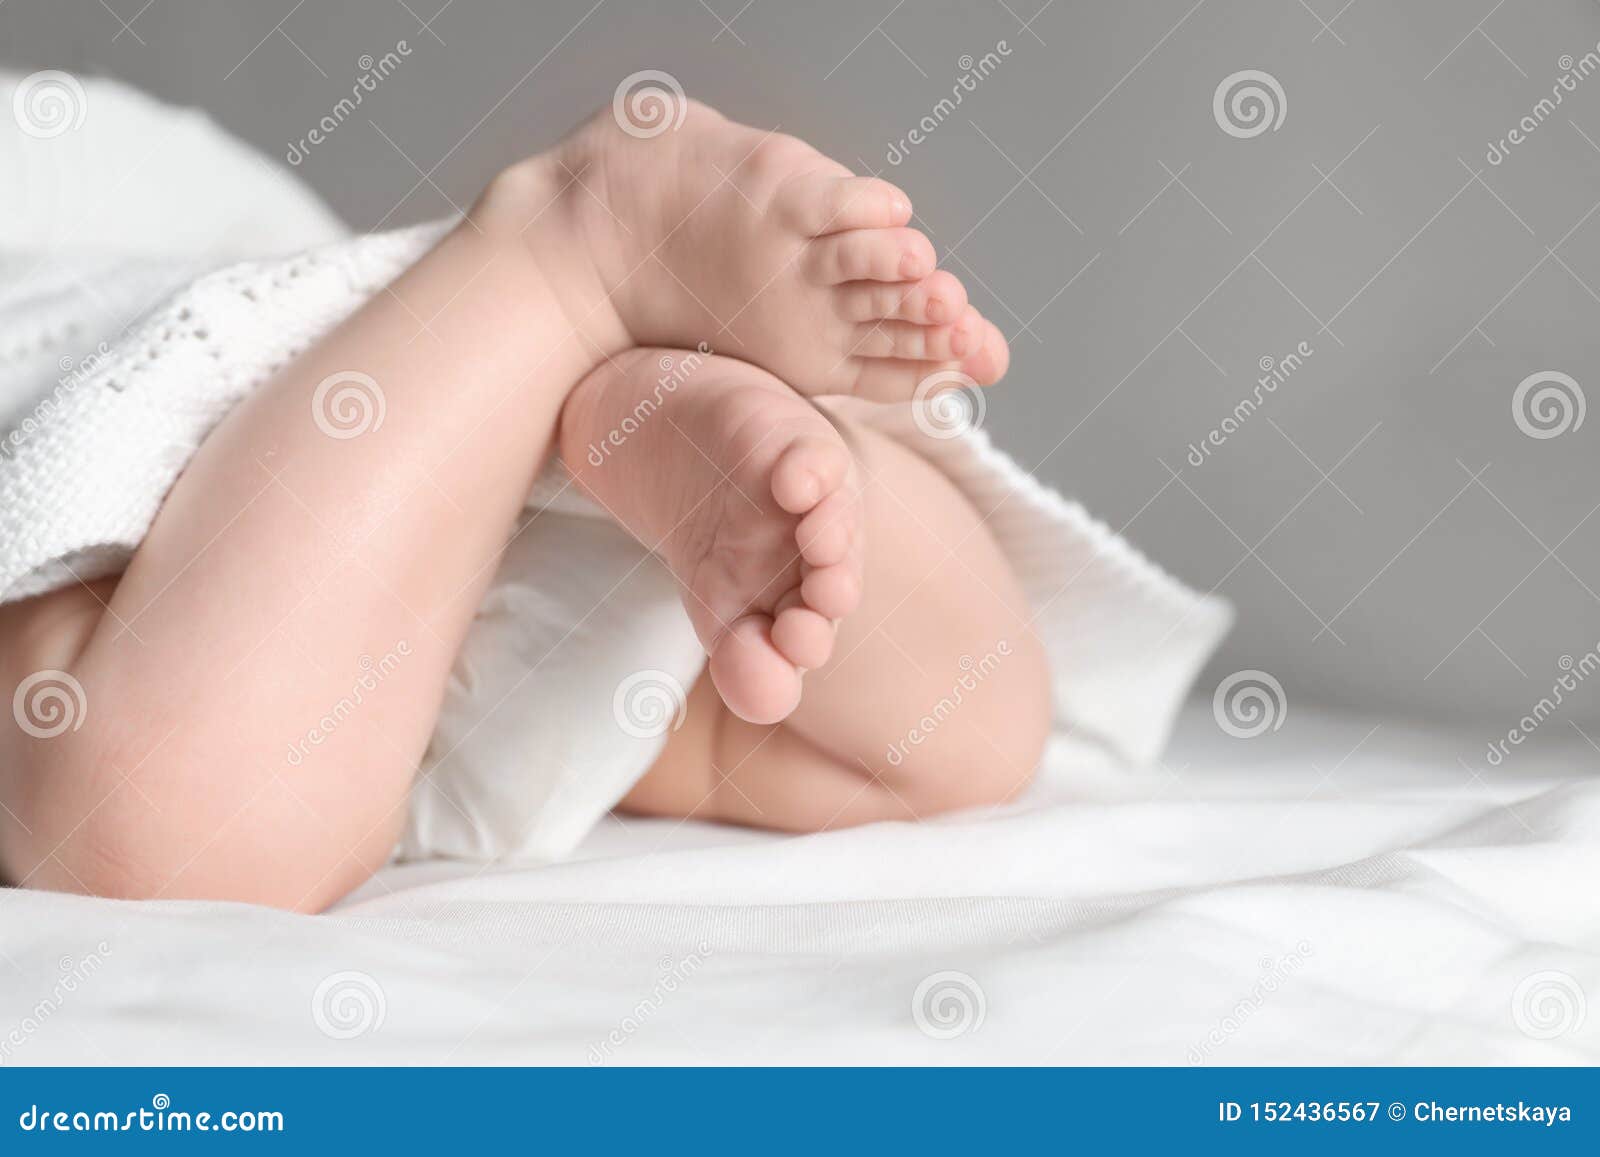 Ножки в 6 месяцев. Ребенок скрещивает ноги 6 месяцев. Новорожденный скрещивает ножки. Новорожденный ребенок перекрещивает ноги. Ребенок скрещивает ноги лежа на животе.